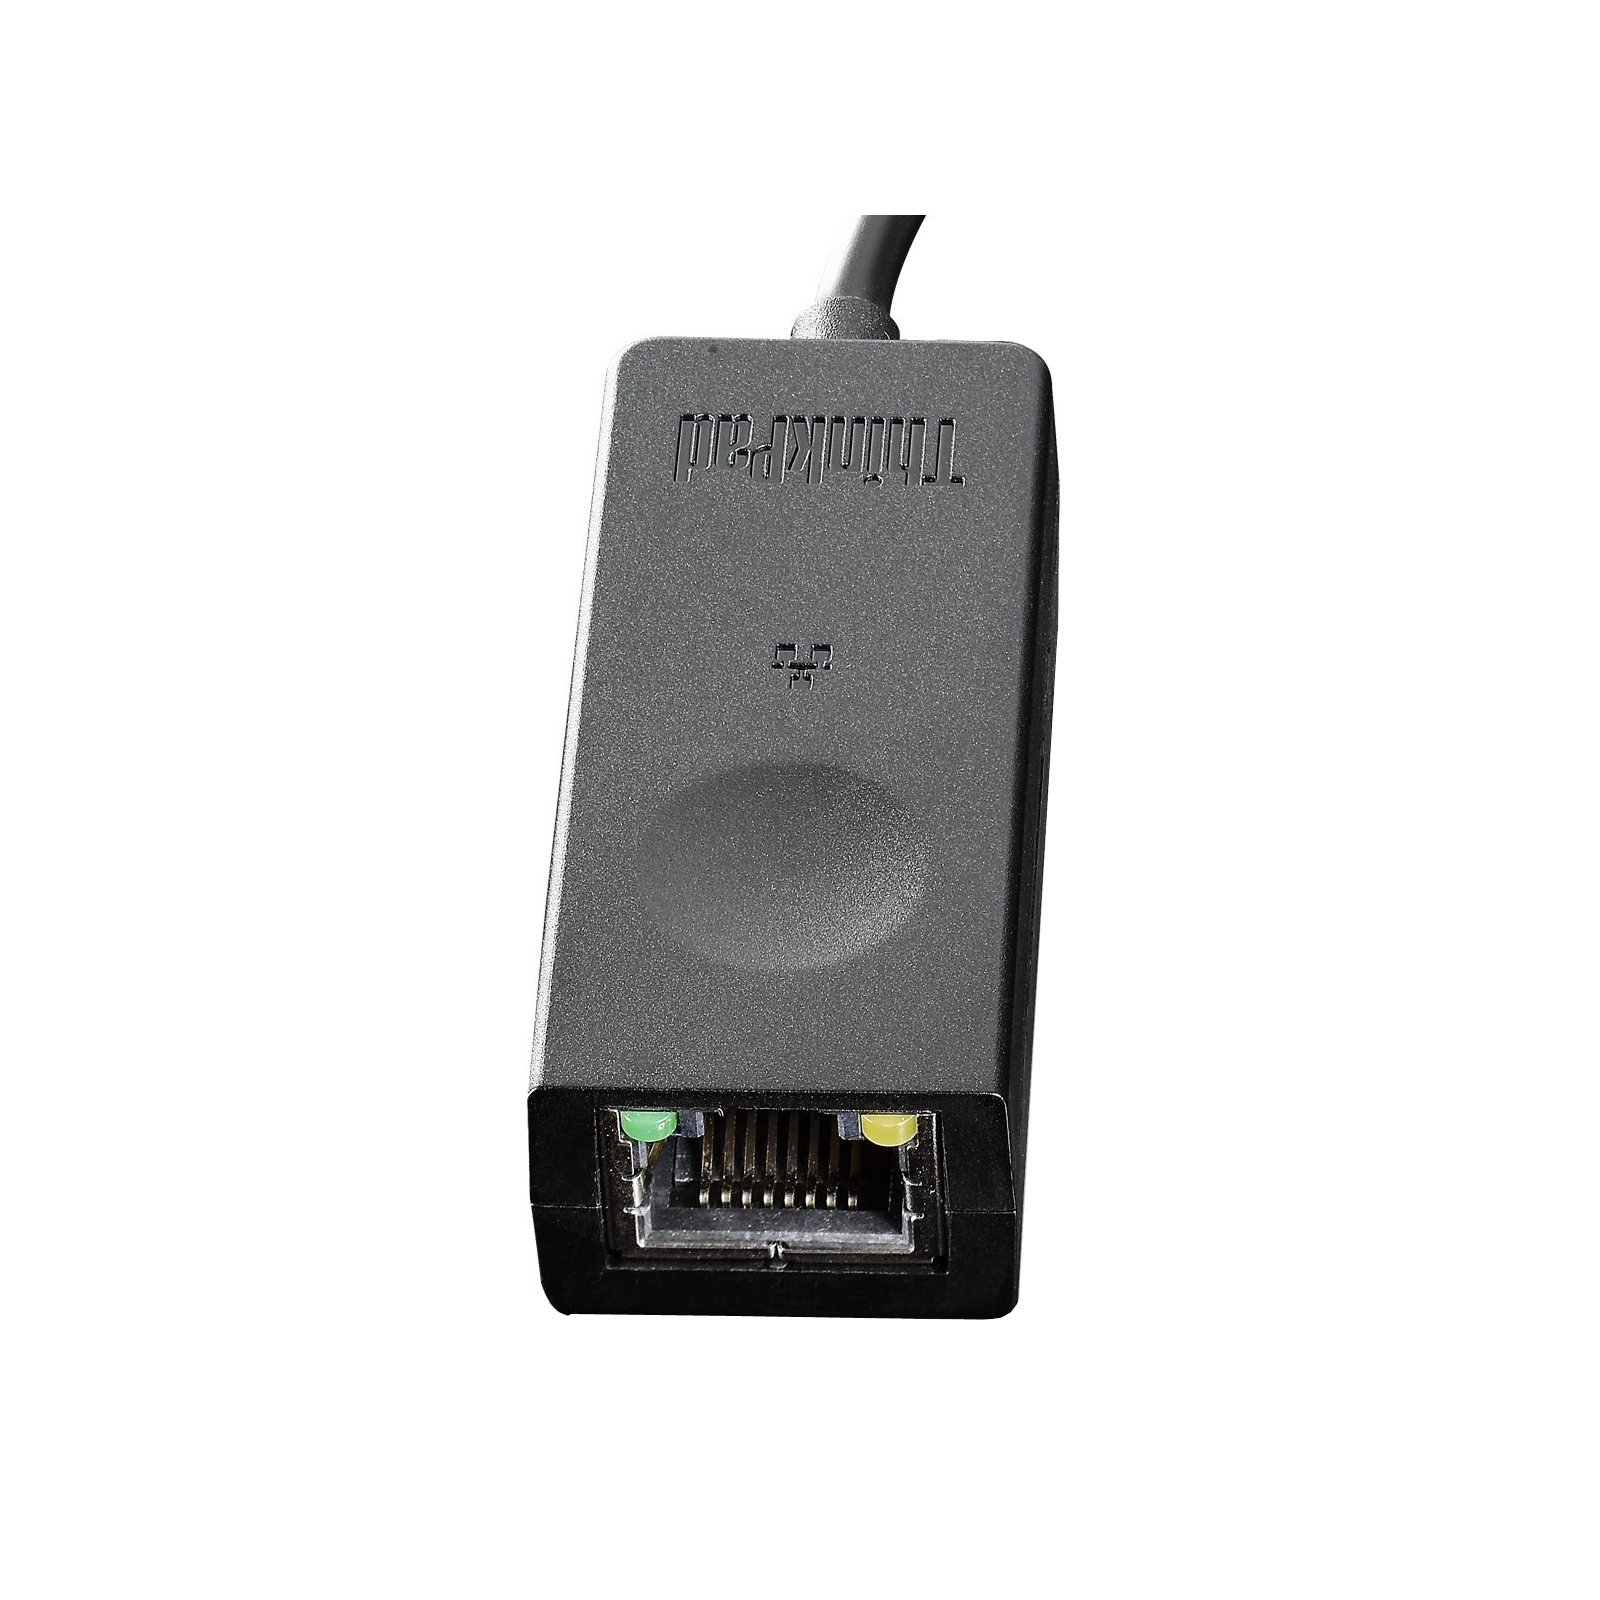 Перехідник Lenovo ThinkPad USB 3.0 Ethernet Adapter (4X90E51405) зображення 2